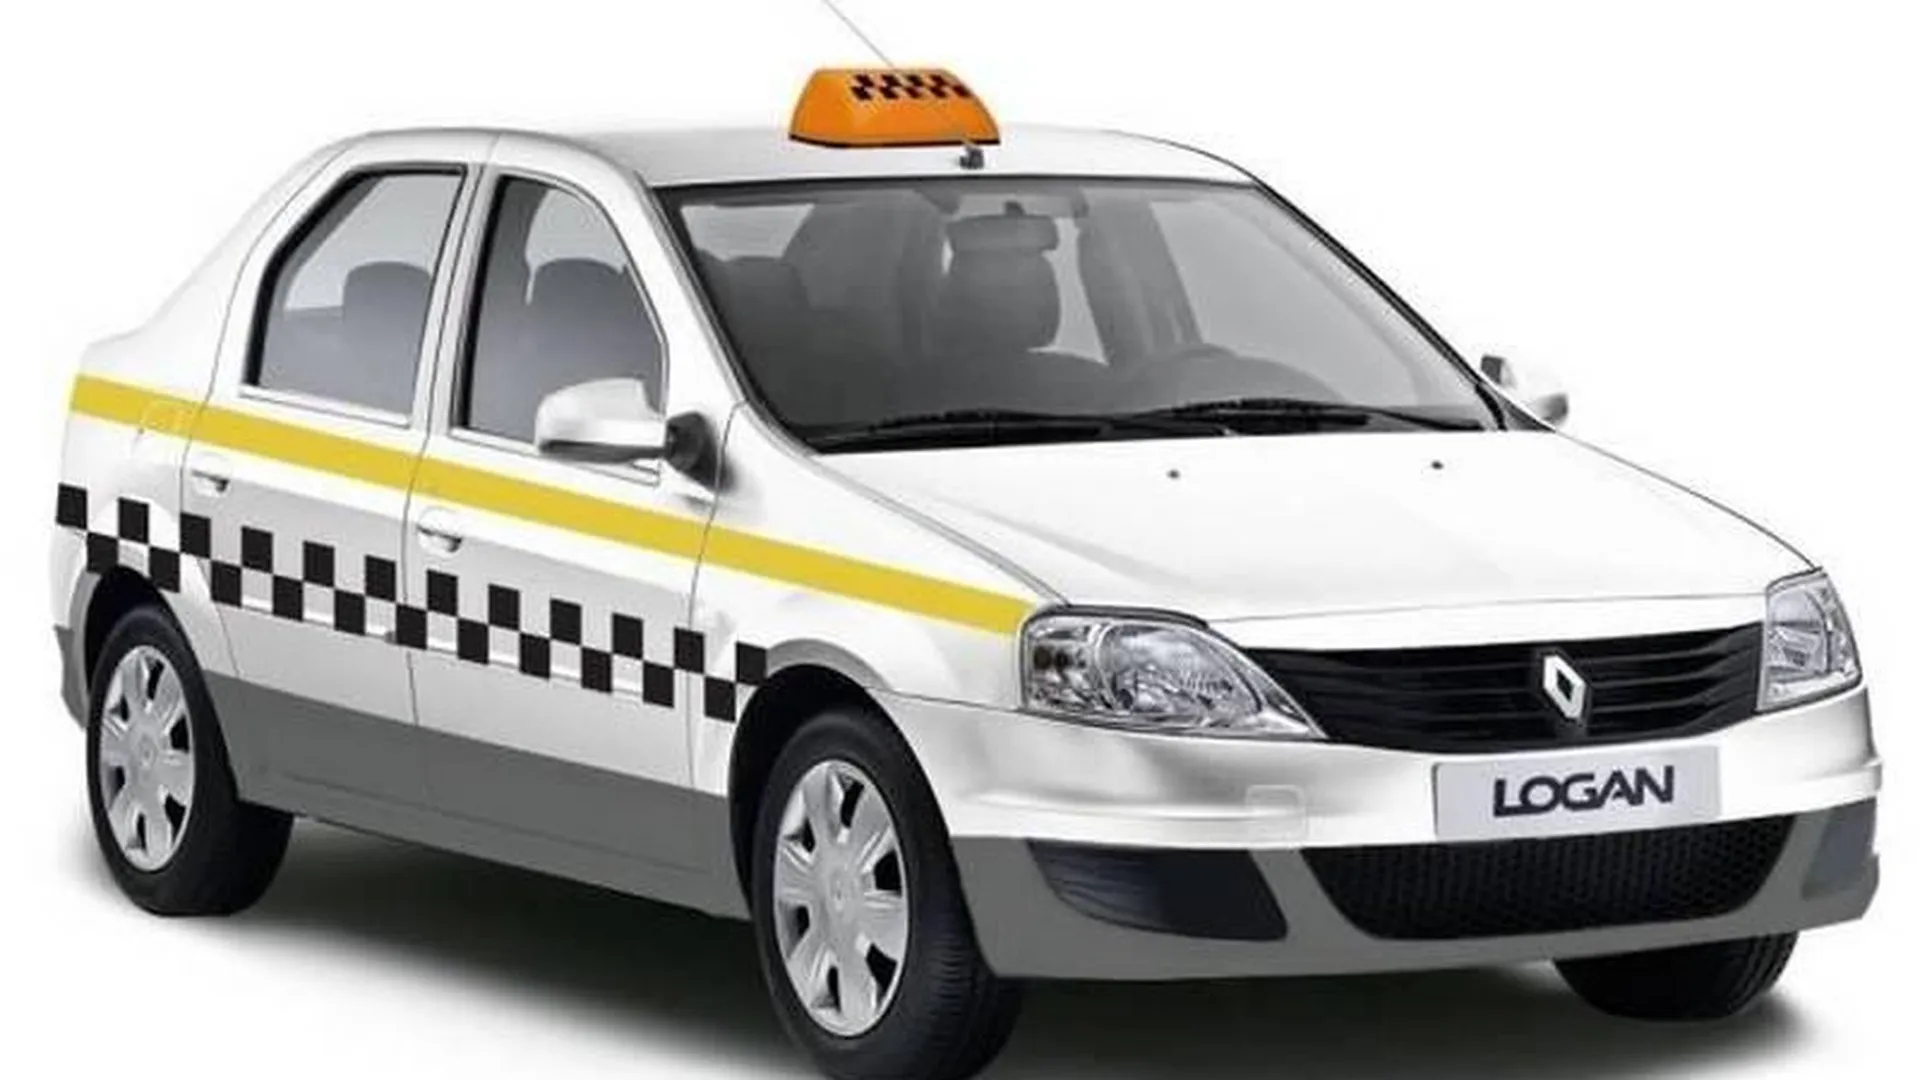 Курсы профмастерства для таксистов откроют в МО в марте 